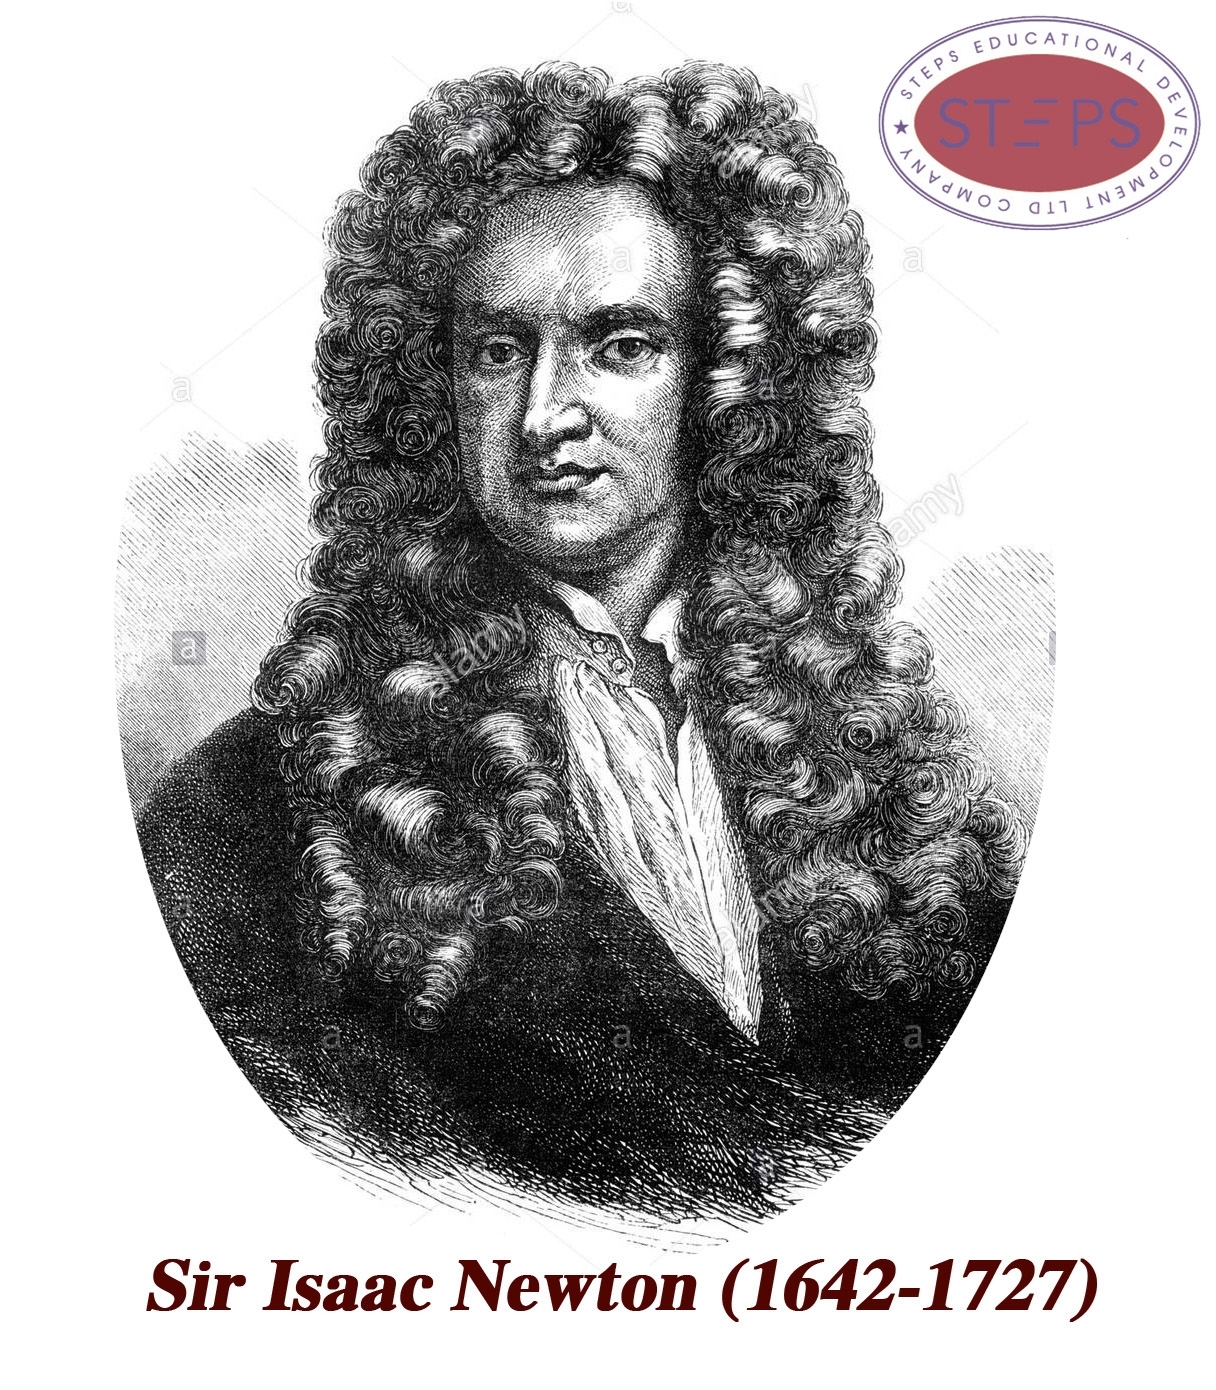 http://www.steps.edu.vn/Sir Isaac Newton